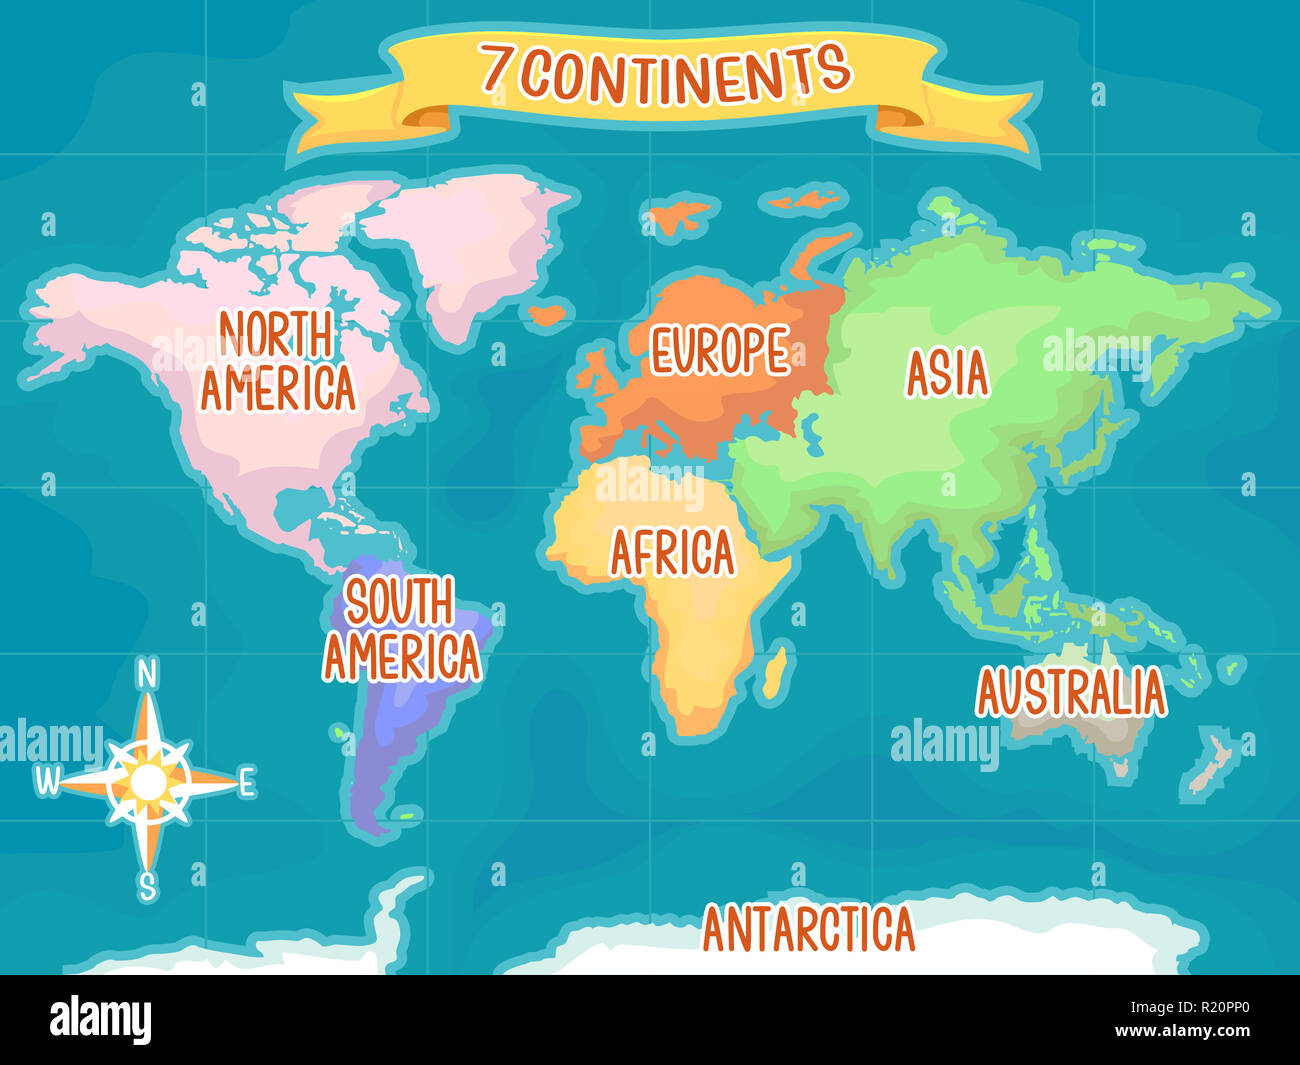 Bunte Illustrationen mit einer Weltkarte die sieben Kontinente hervorheben  Stockfotografie - Alamy